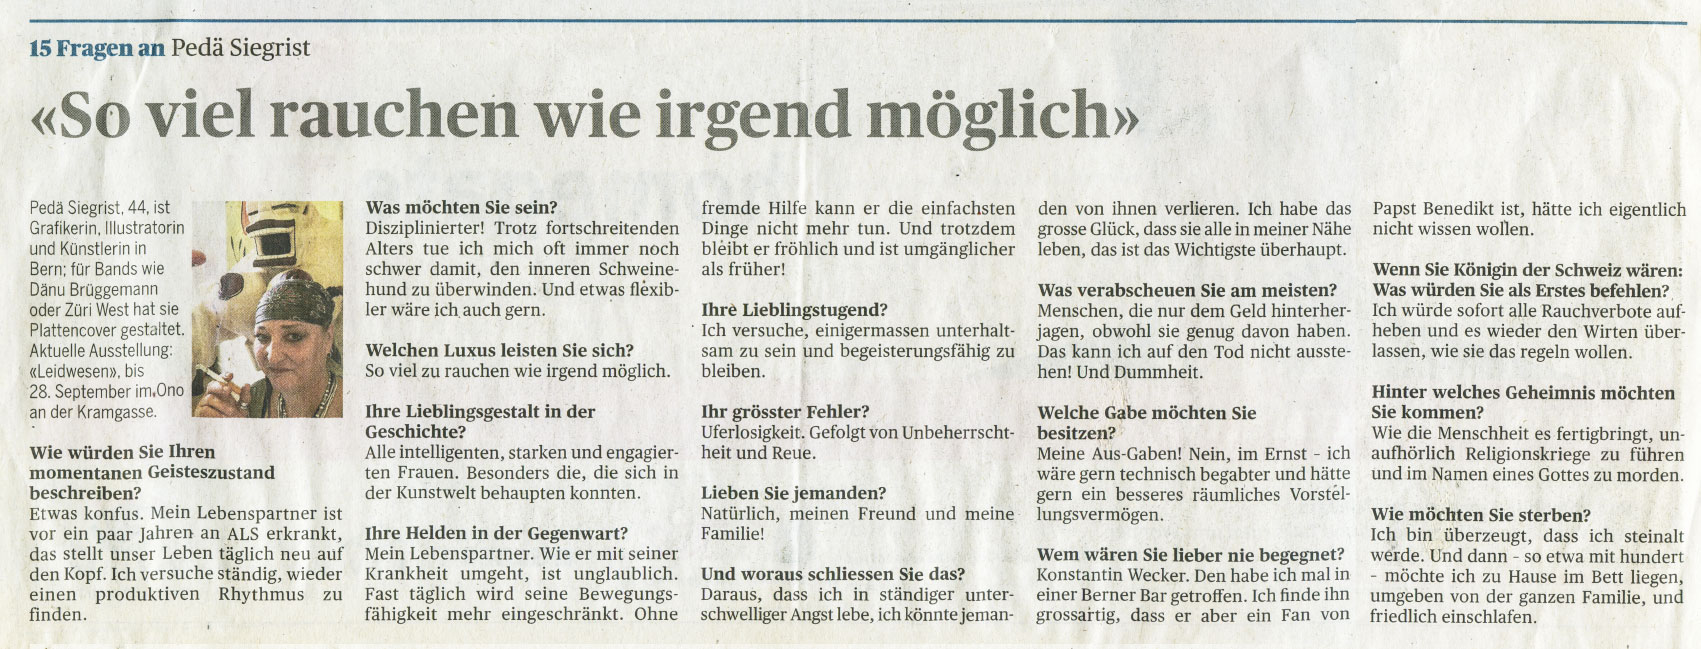 Der Bund, 15 Fragen an Pedä Siegrist, 14.08.2012